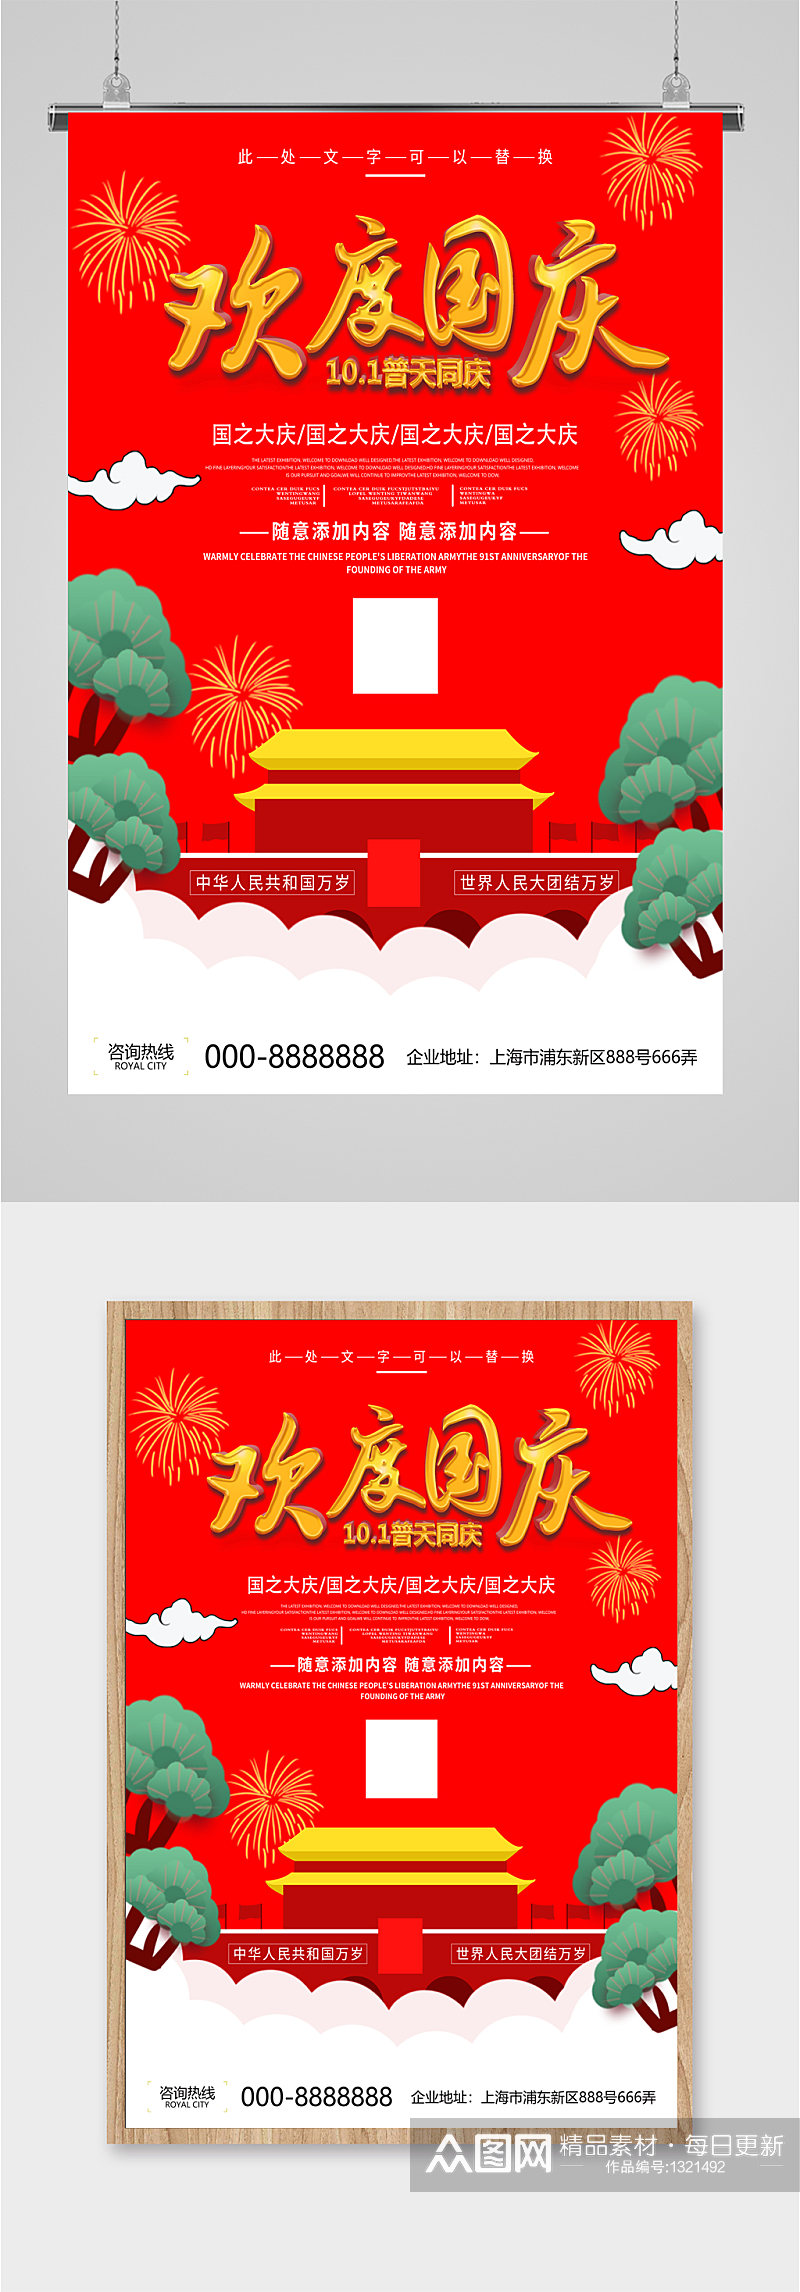 欢度国庆国庆节宣传海报素材